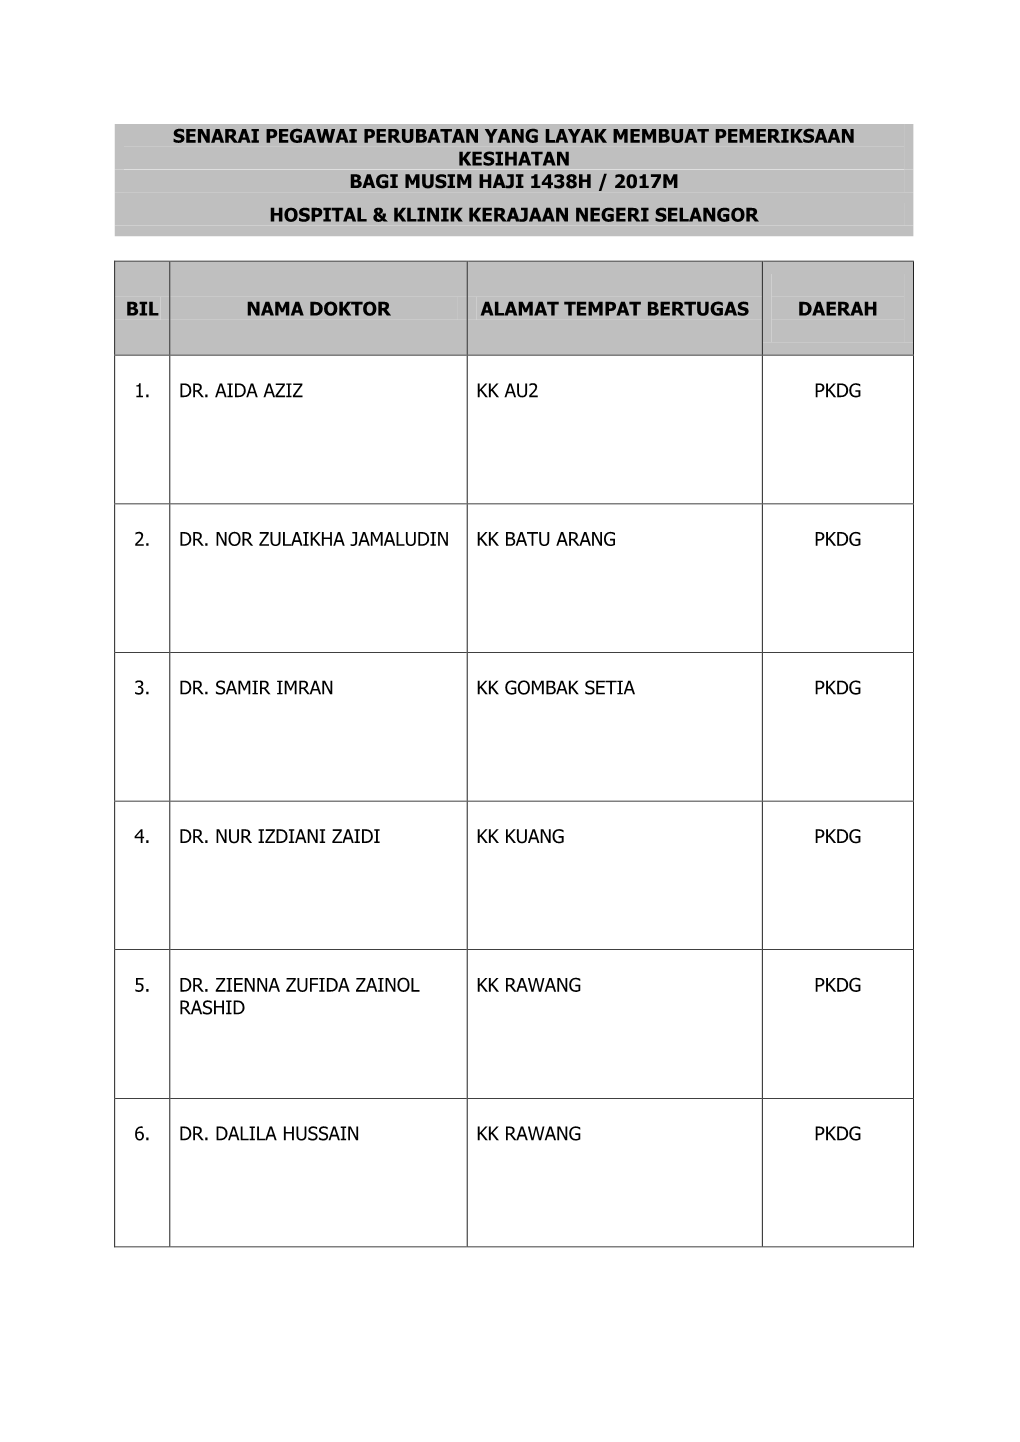 Senarai Pegawai Perubatan Yang Layak Membuat Pemeriksaan Kesihatan Bagi Musim Haji 1438H / 2017M Hospital & Klinik Kerajaan Negeri Selangor